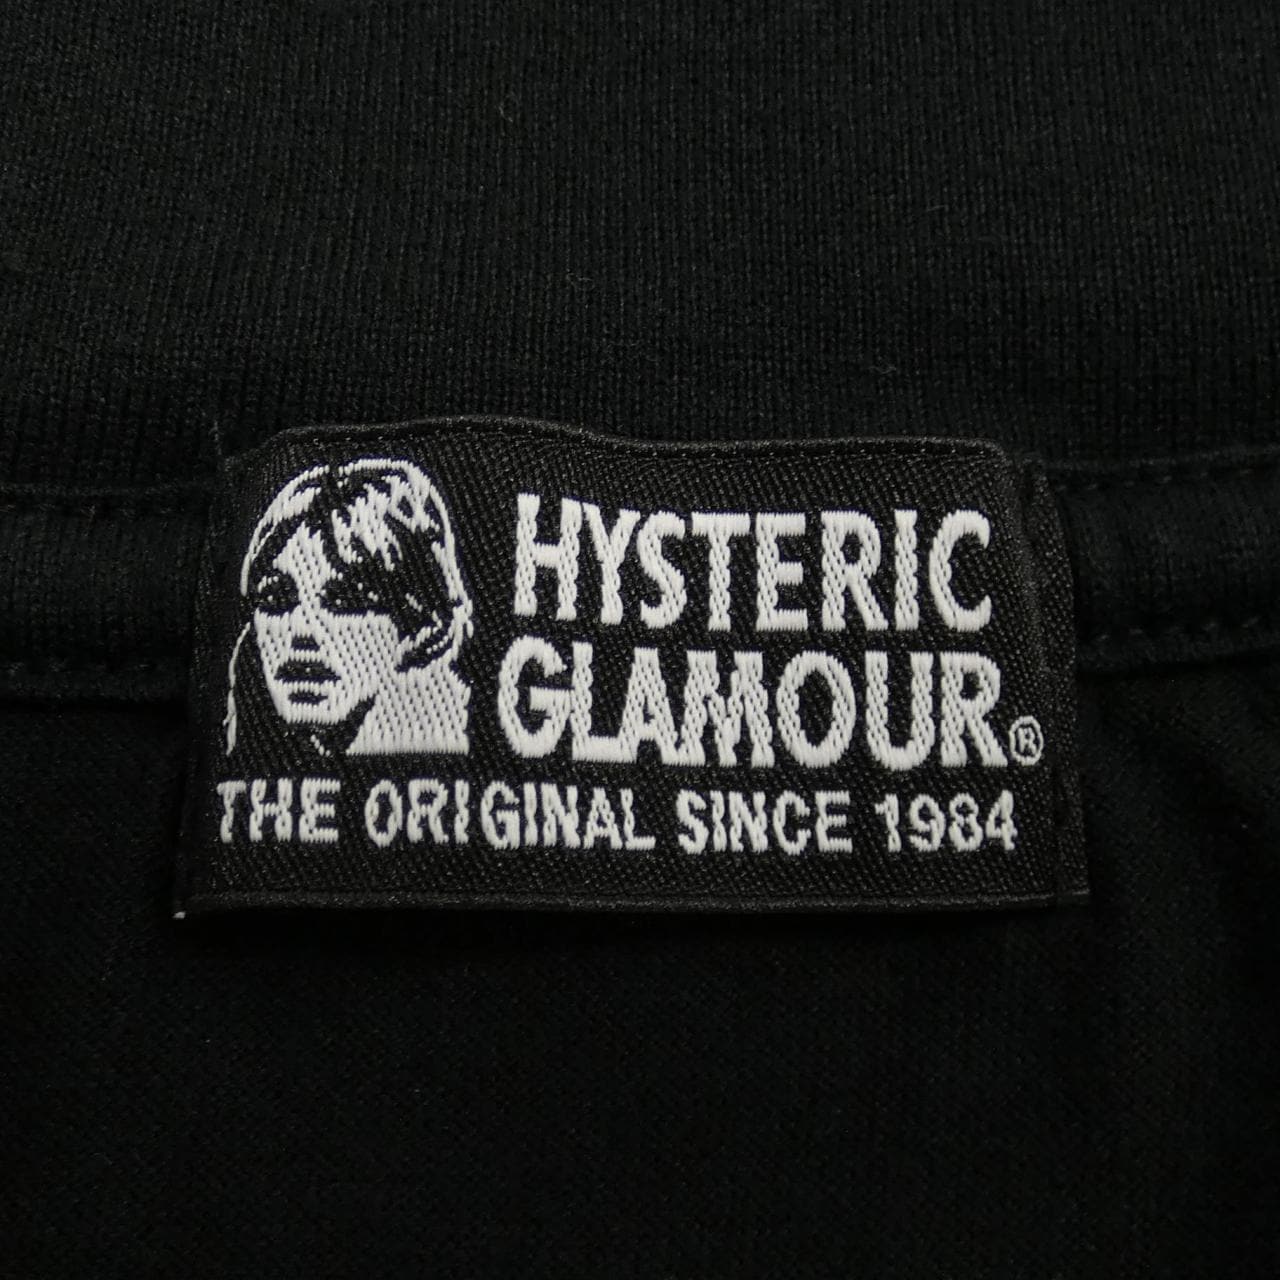 ヒステリックグラマー HYSTERIC GLAMOUR Tシャツ